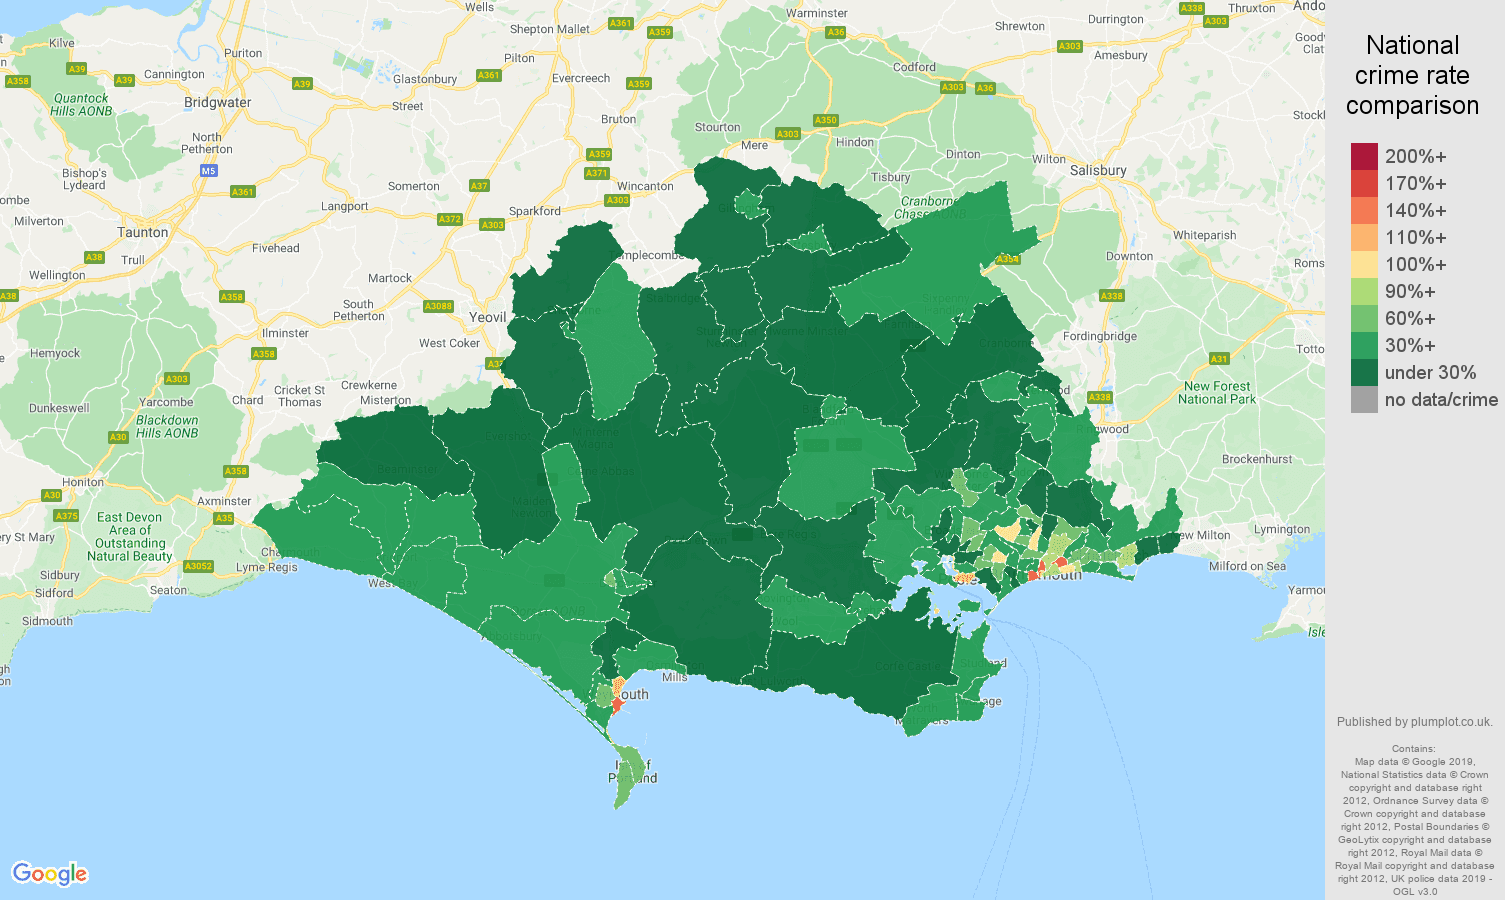 Dorset public order crime rate comparison map